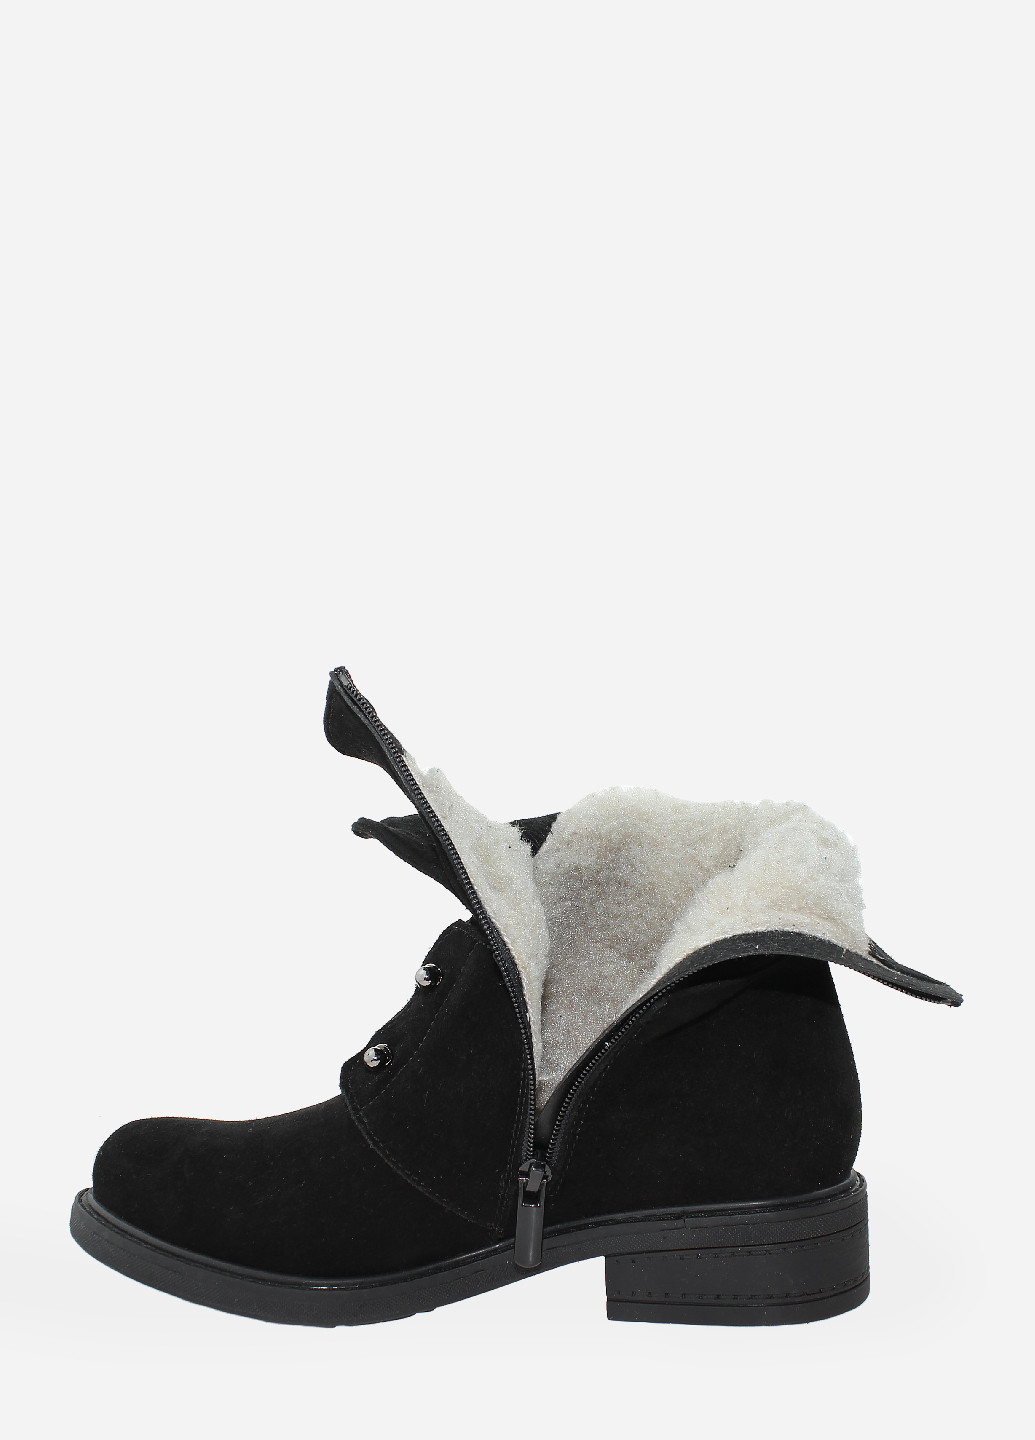 Зимние ботинки raj10-11 черный Azatti из натуральной замши